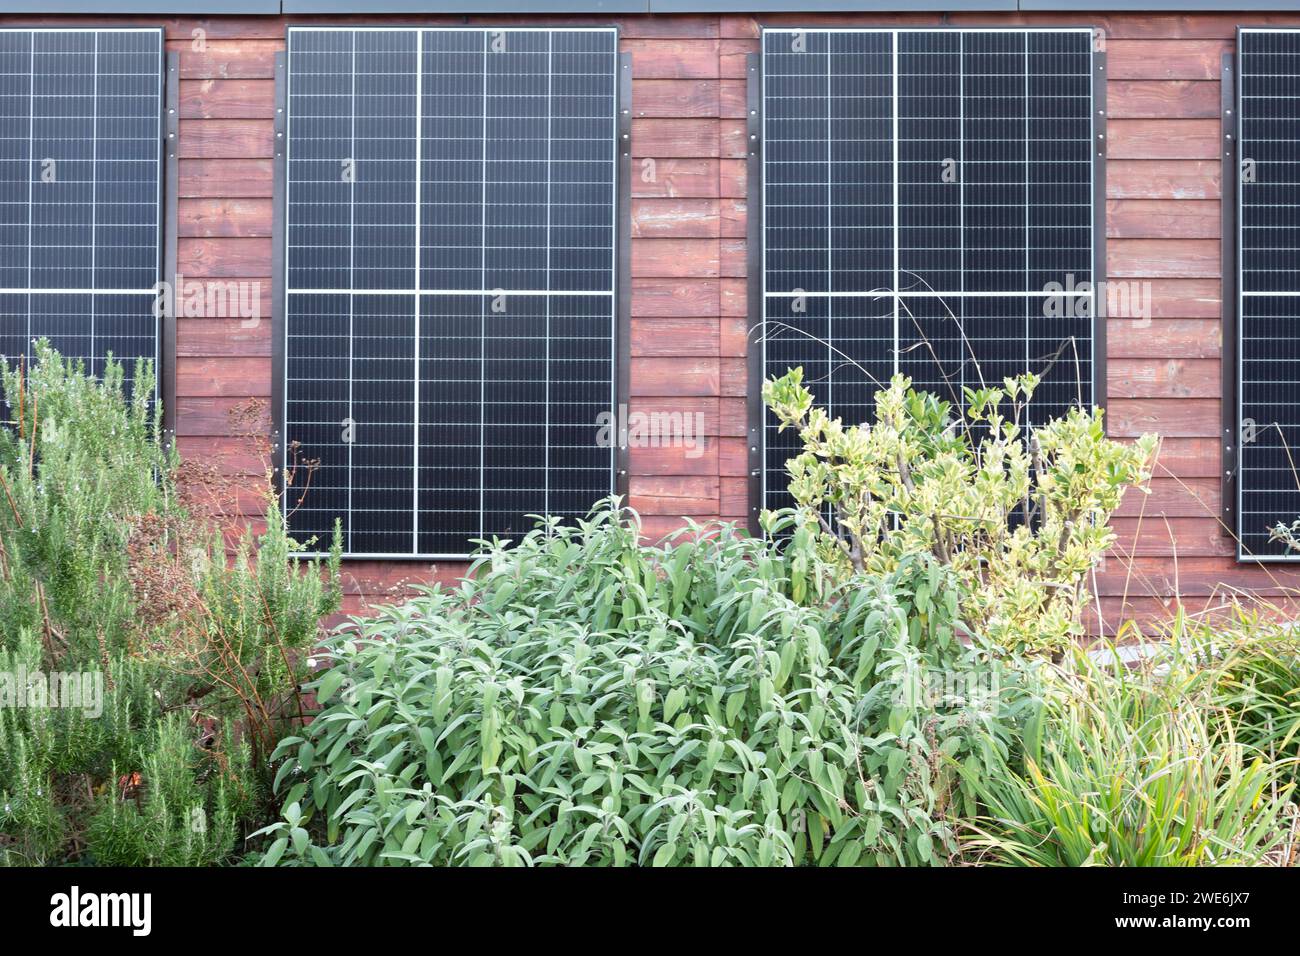 Deutschland, Baden-Württemberg, Freiburg im Breisgau, Solarpaneele an Gebäudewand mit Büschen im Vordergrund Stockfoto